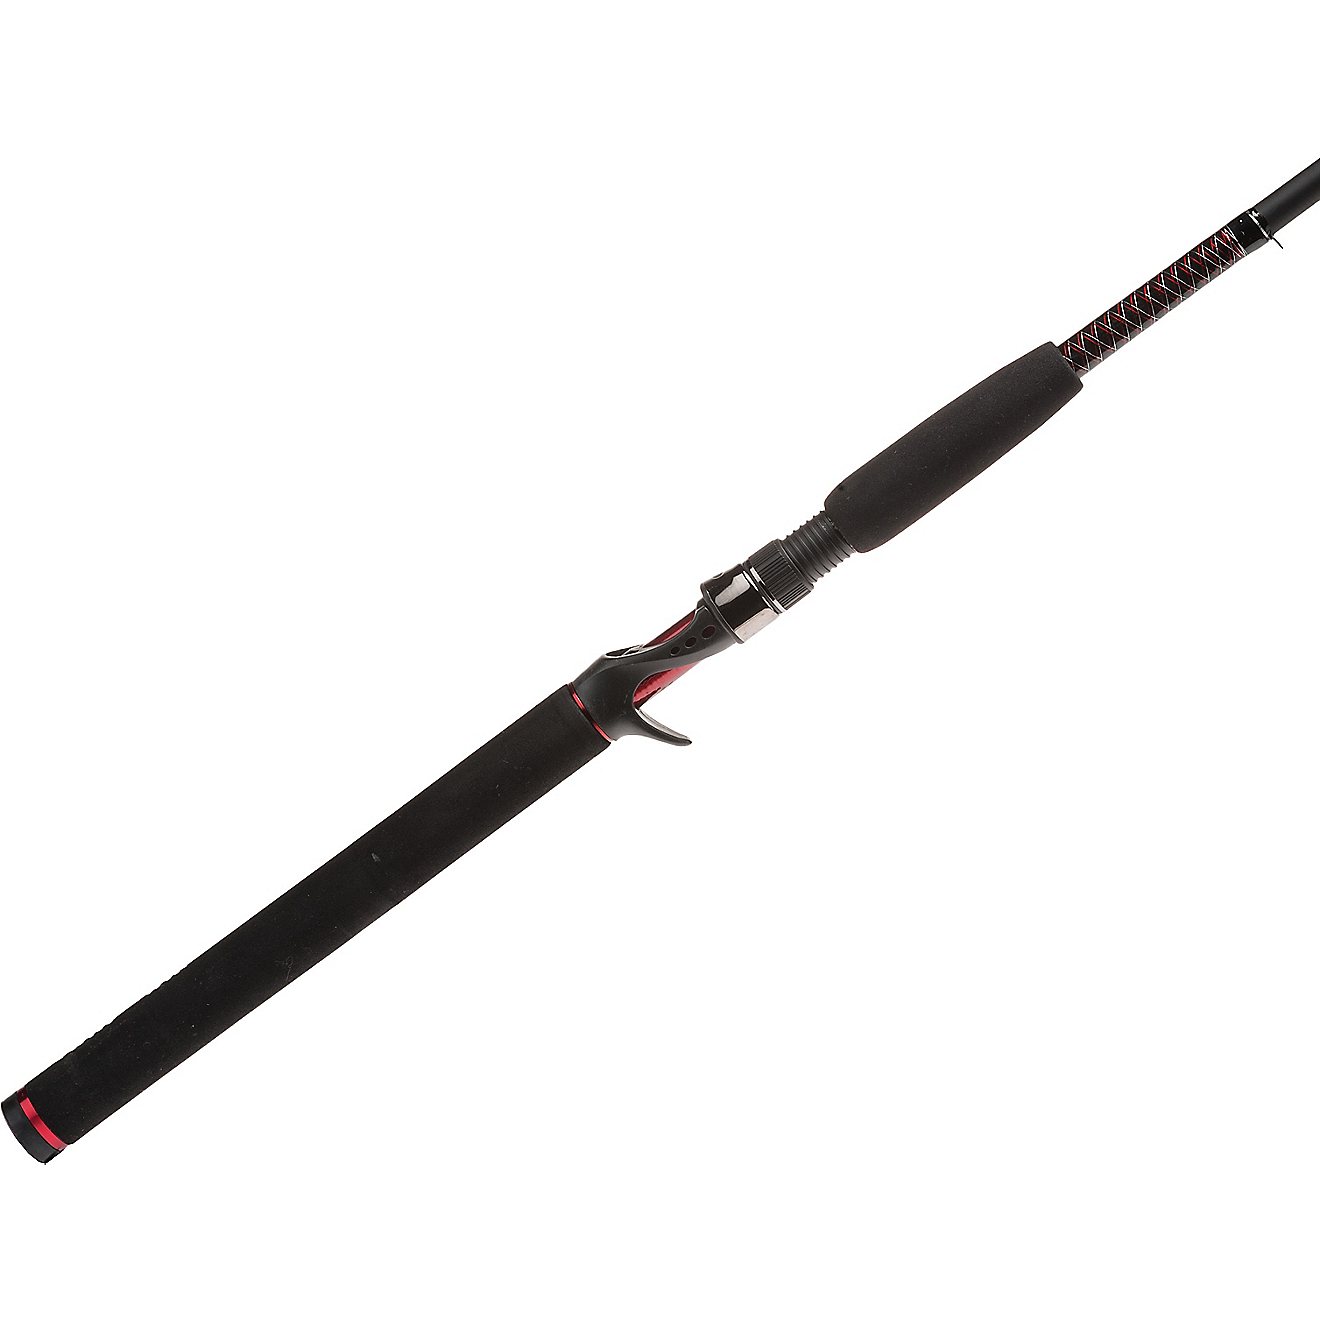 Ugly Stik GX2 6'6 MH Casting Rod